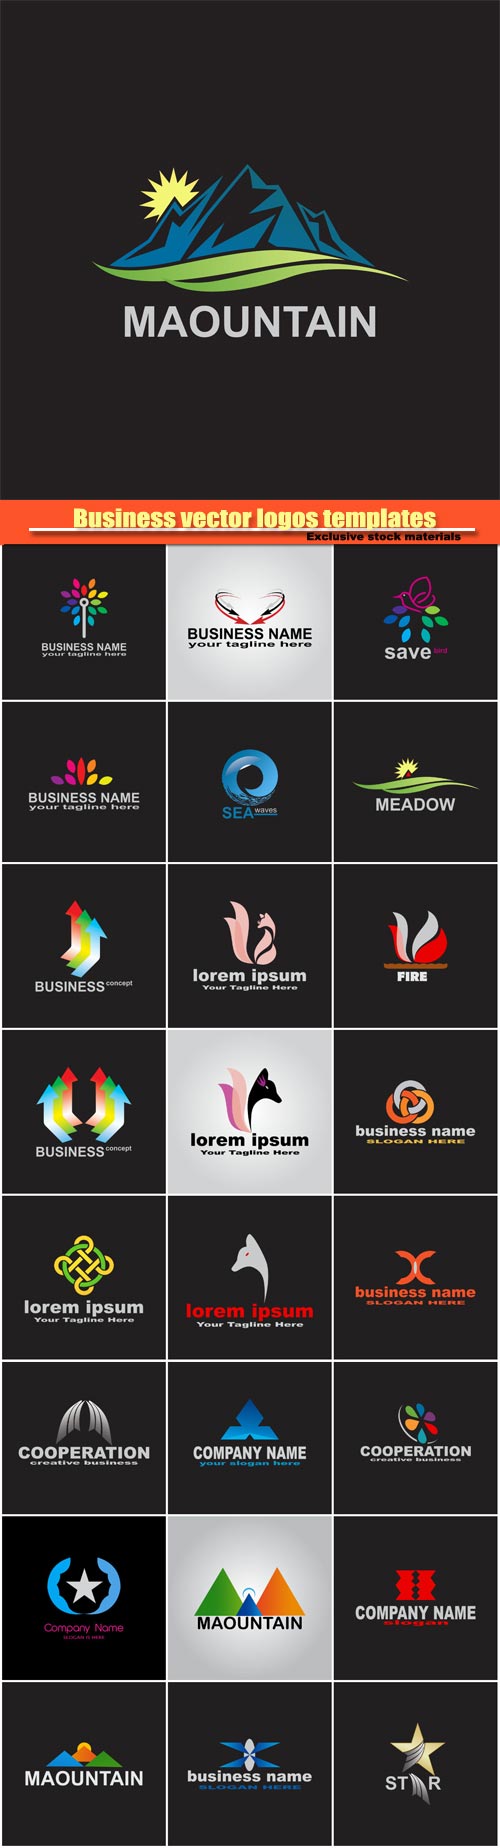 Business vector logos templates, creative figure icon